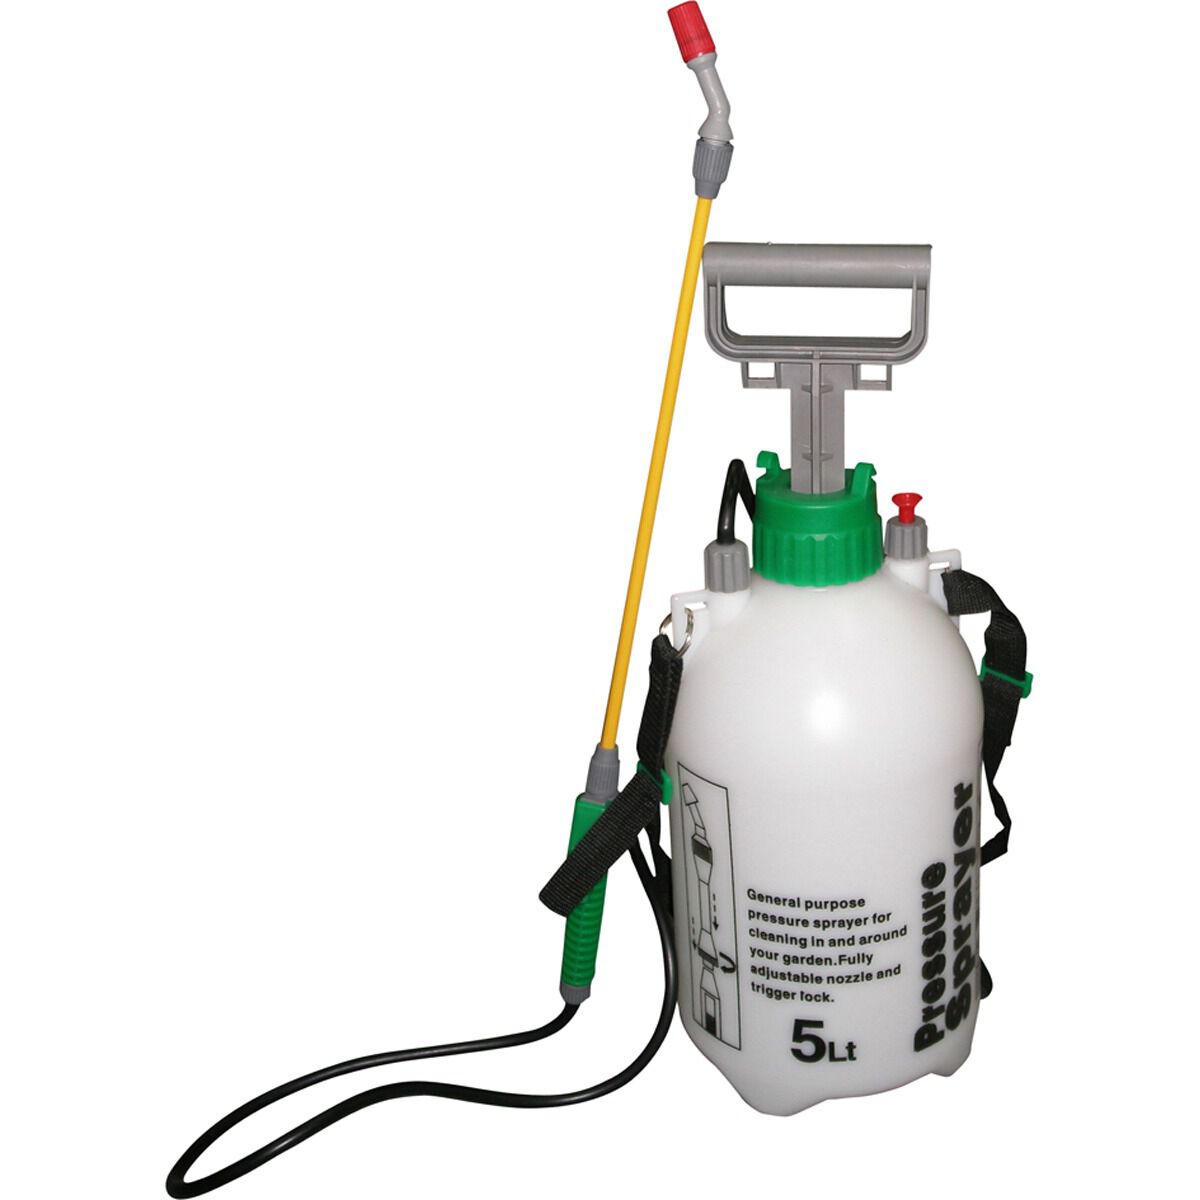 Pump Action Pressure Sprayers